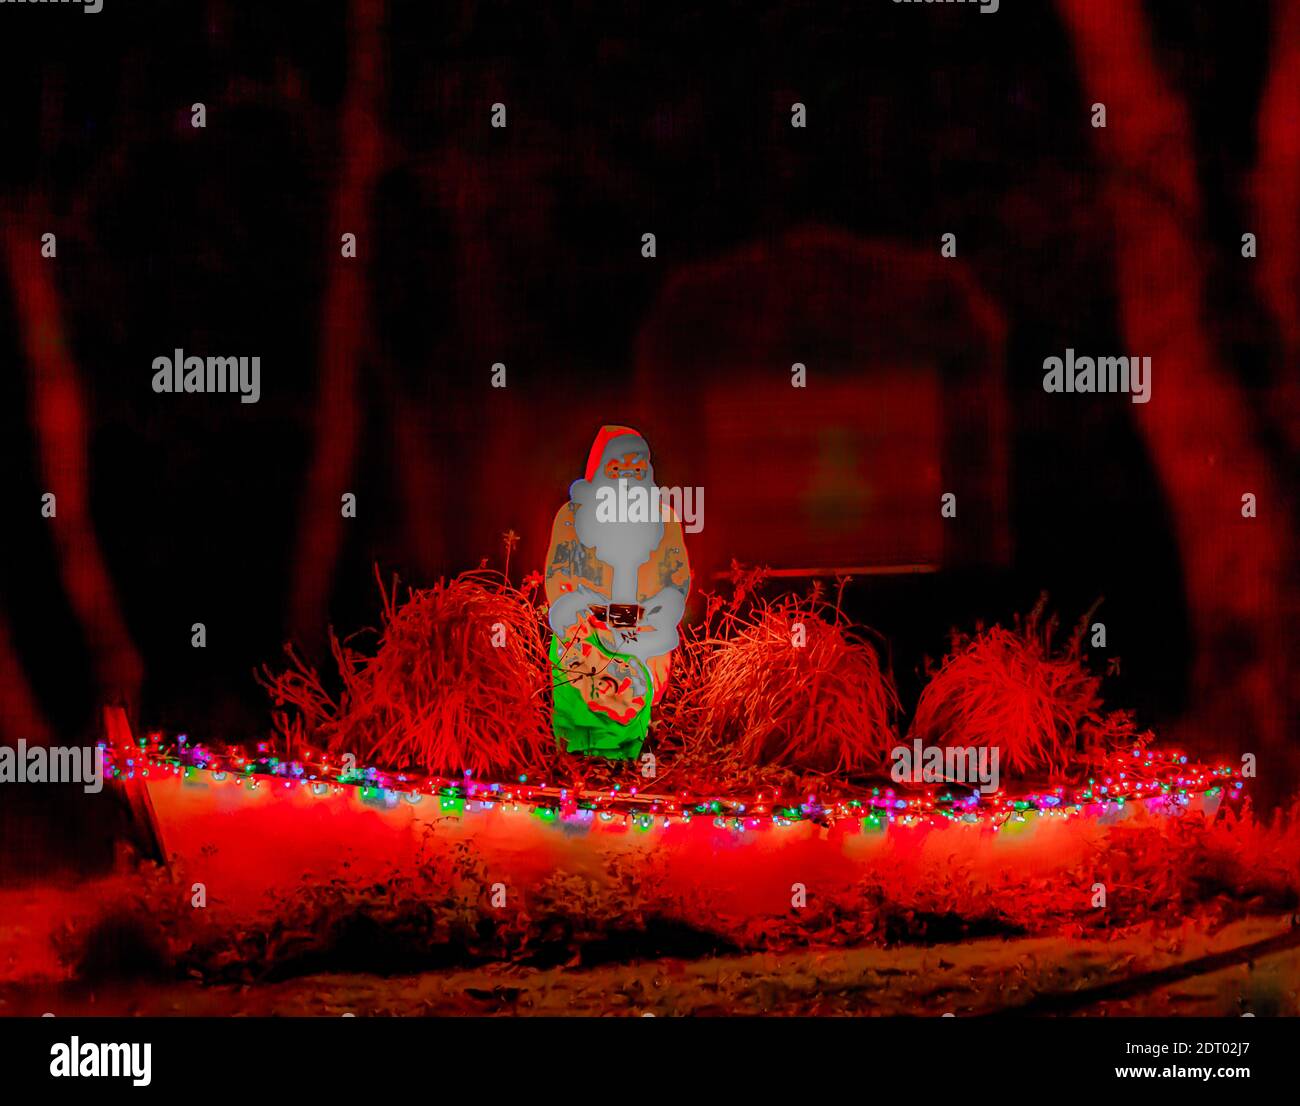 Verrückte Nachtaufnahme des Weihnachtsmannes in einem Boot Alle dekoriert für Weihnachten Stockfoto